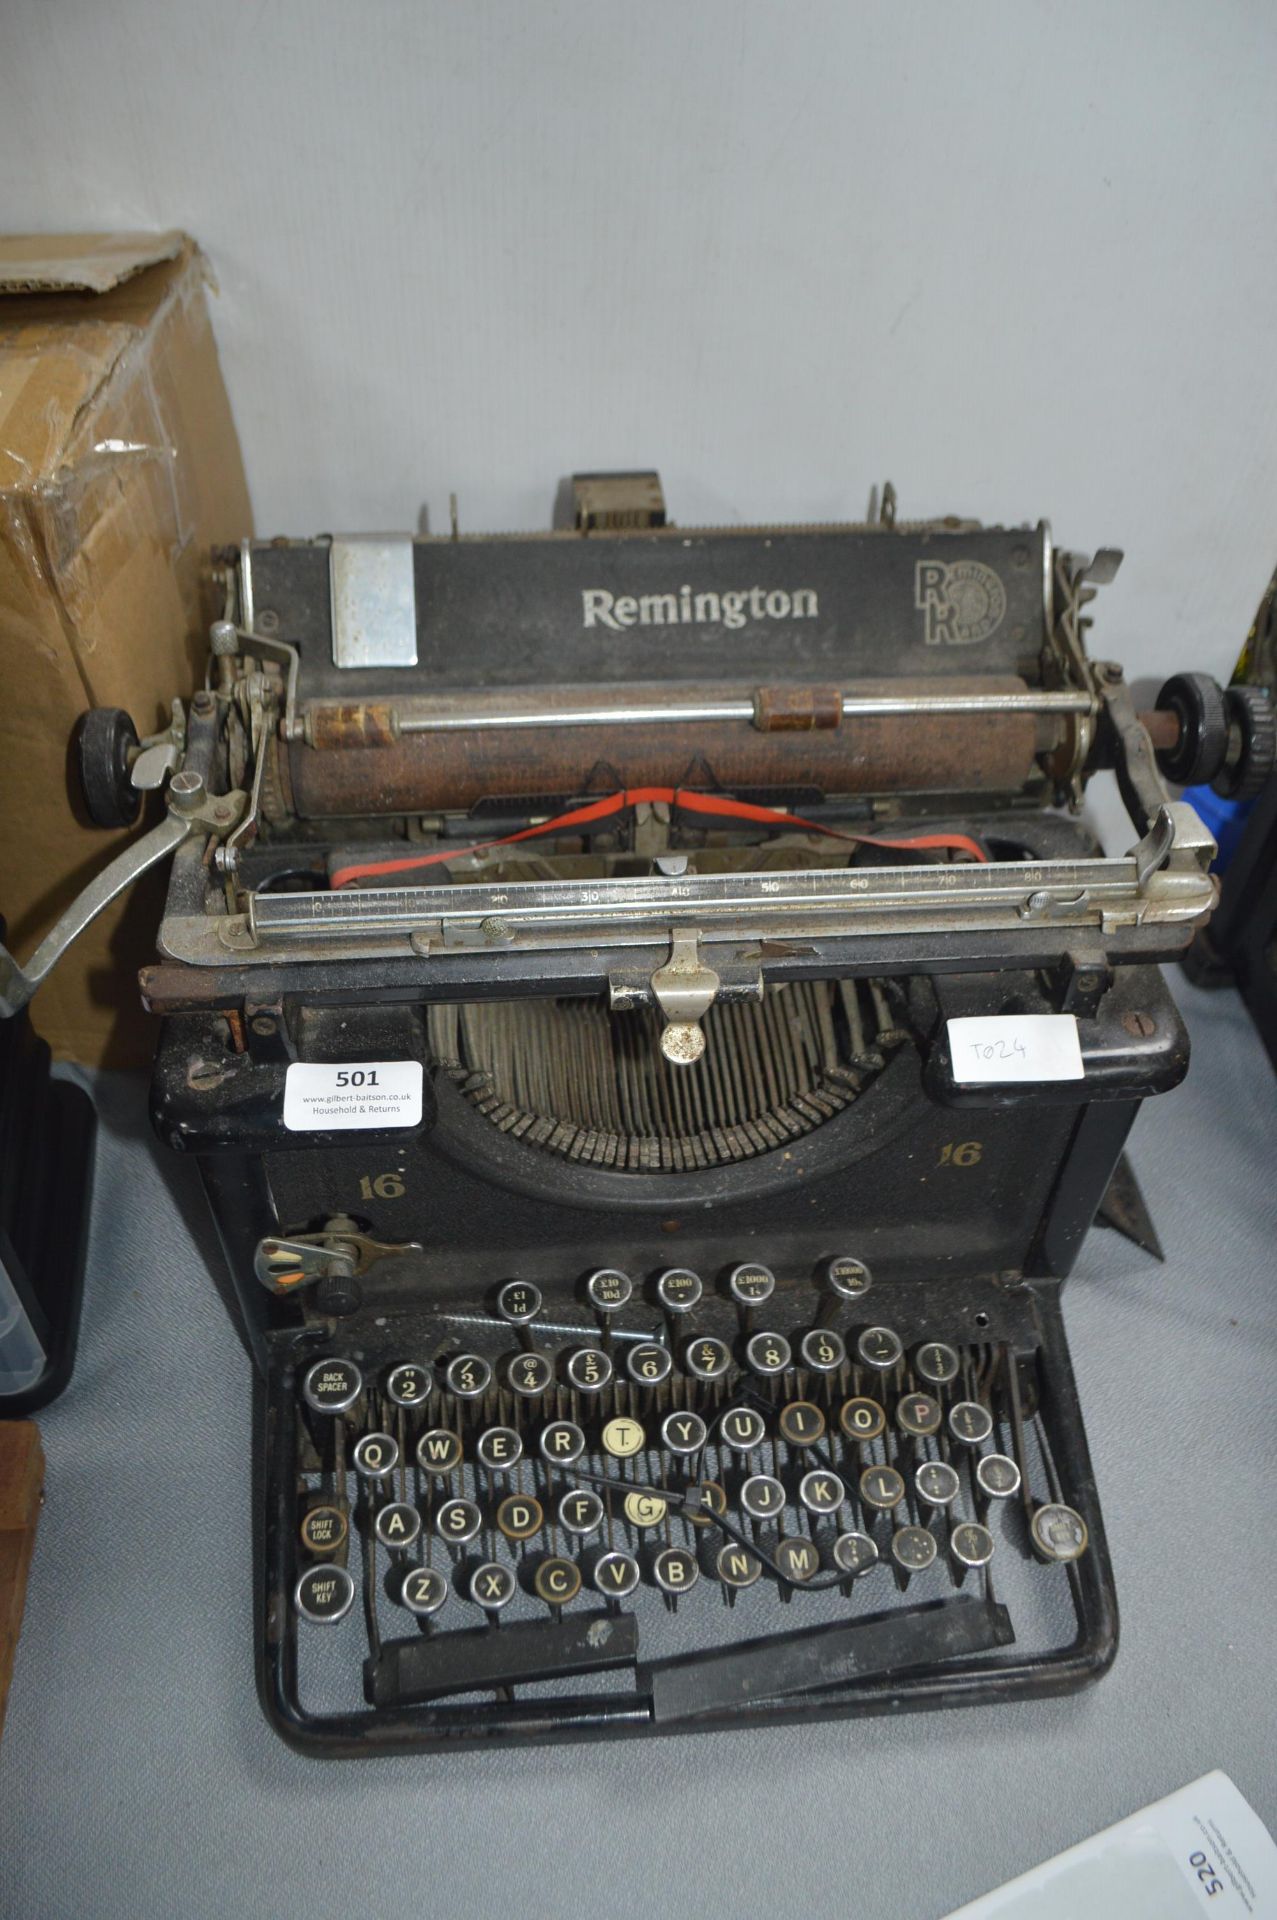 *Vintage Remington Typewriter